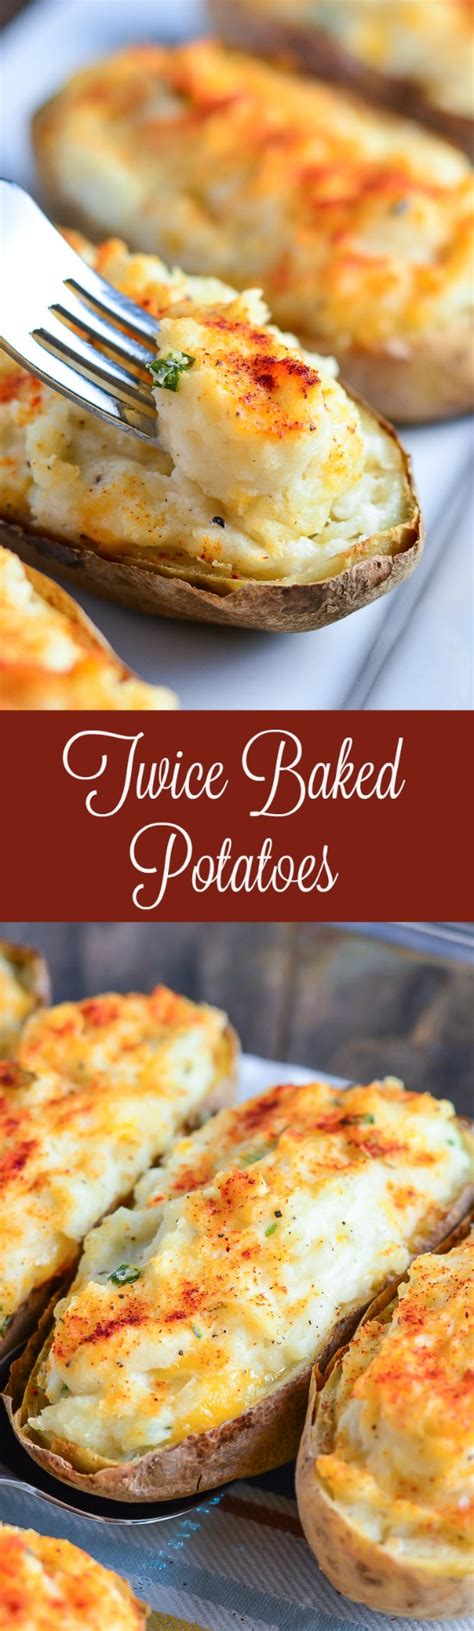 easy-twice-baked-potatoes-garnish-glaze image